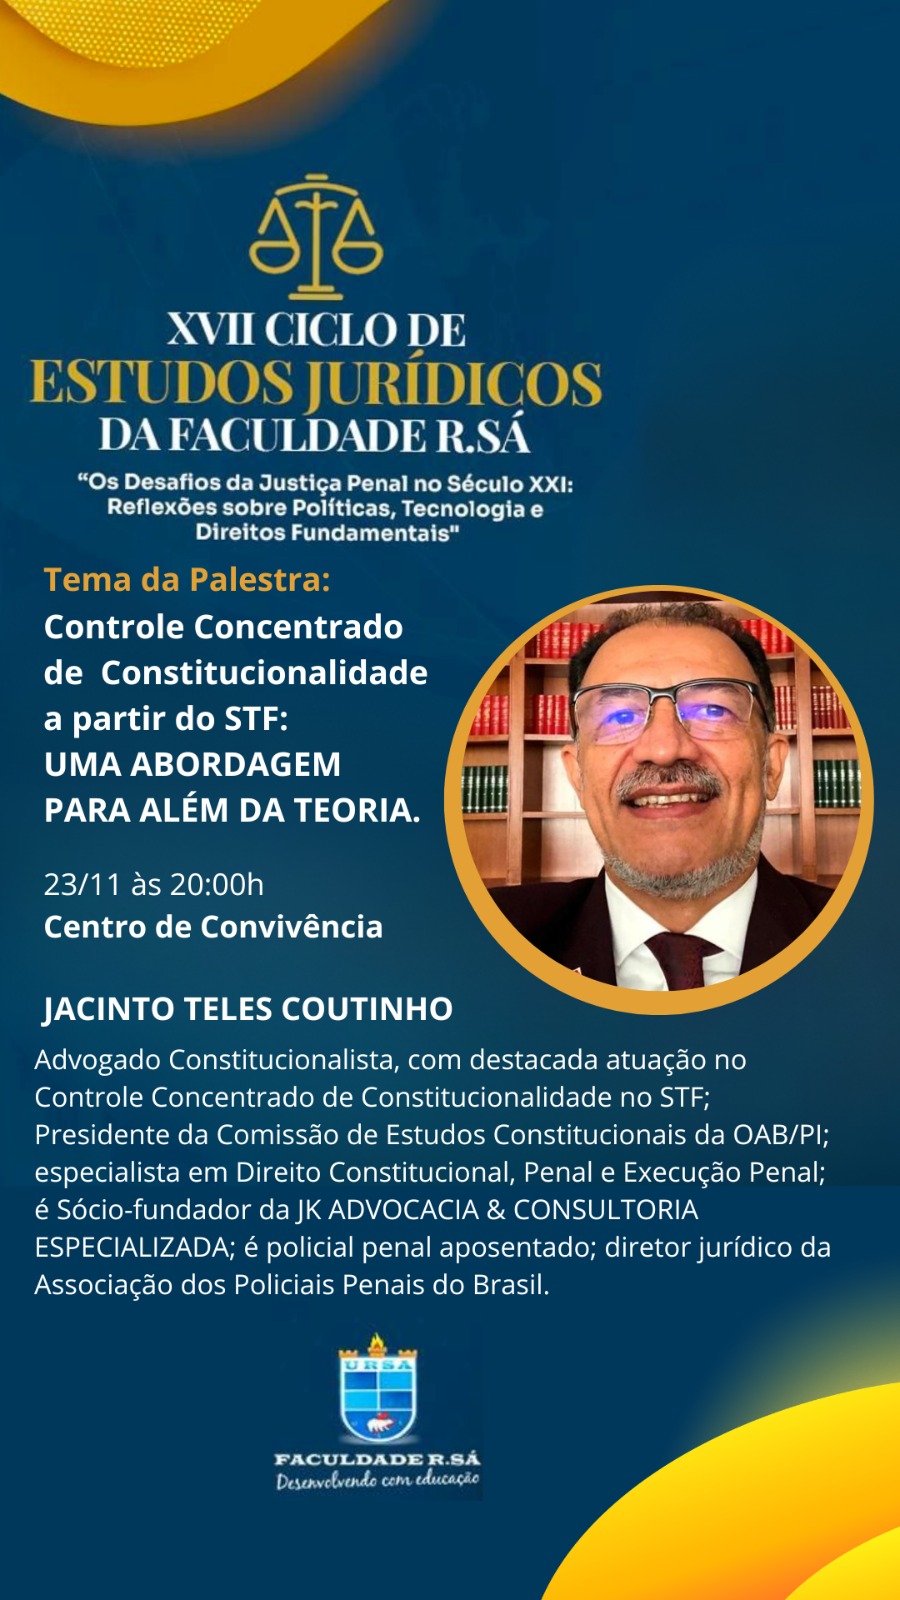 Apresentação do palestrante Jacinto Teles